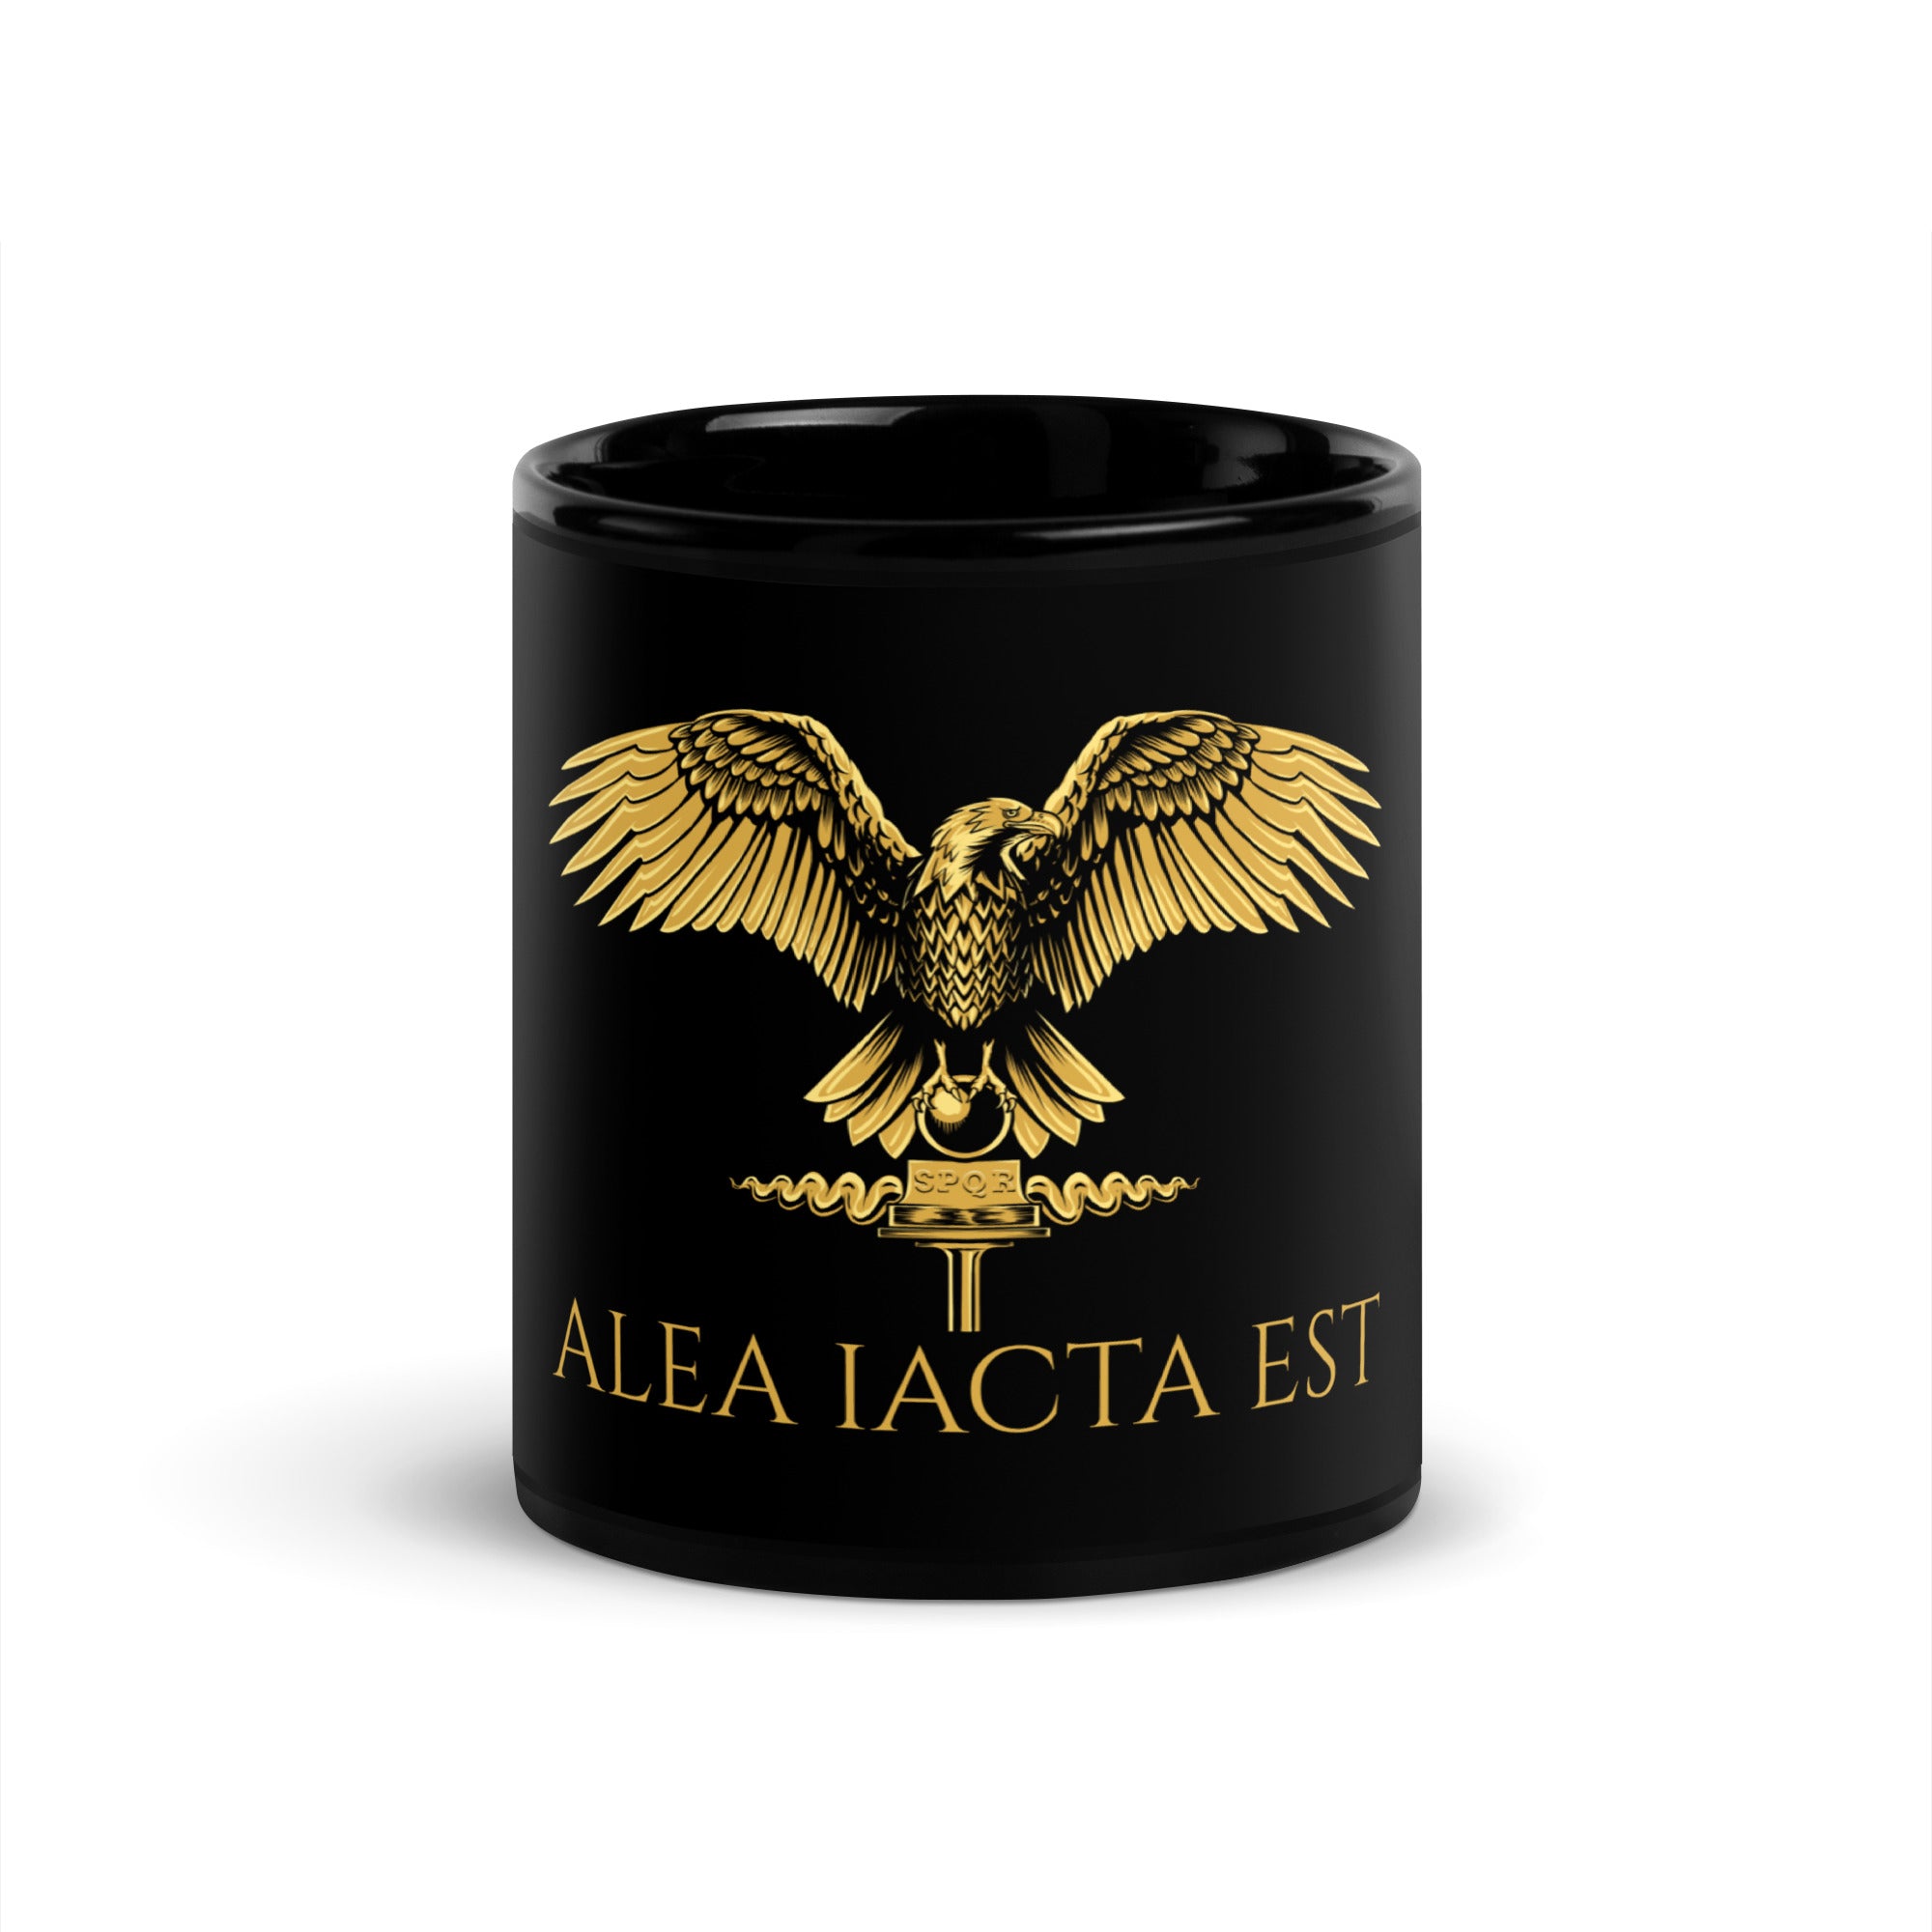 Alea iacta est coffee mug